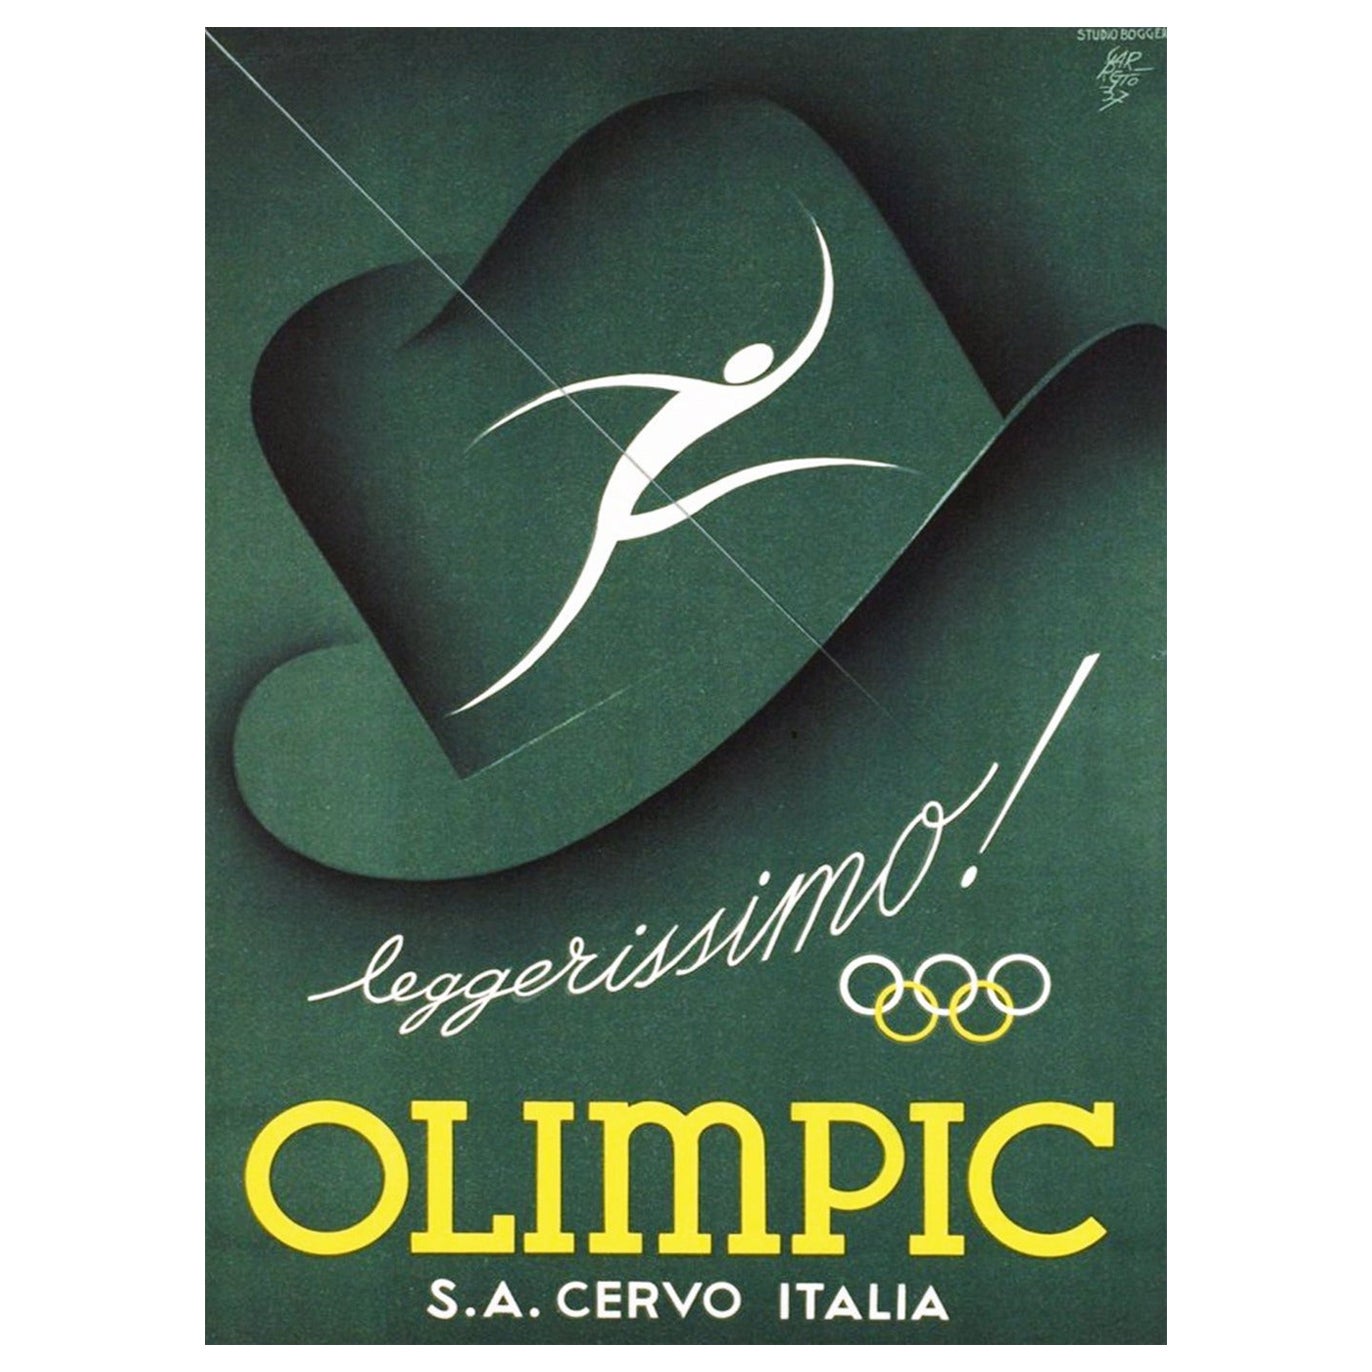 Affiche rétro originale Olimpic Italia de 1937